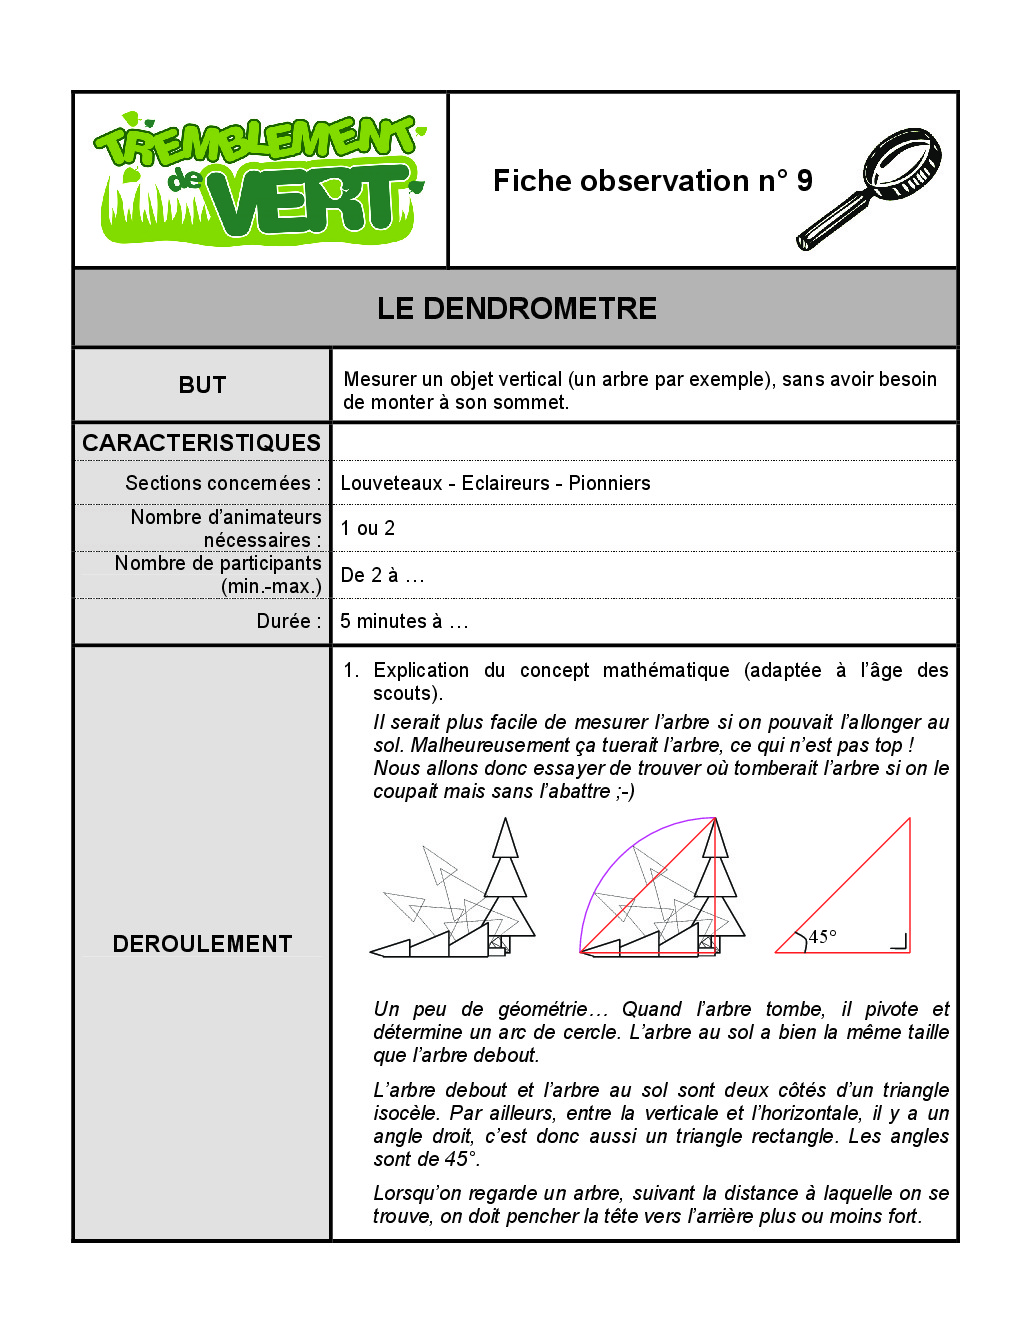 FT_TV_OBS_09_dendrometre.pdf